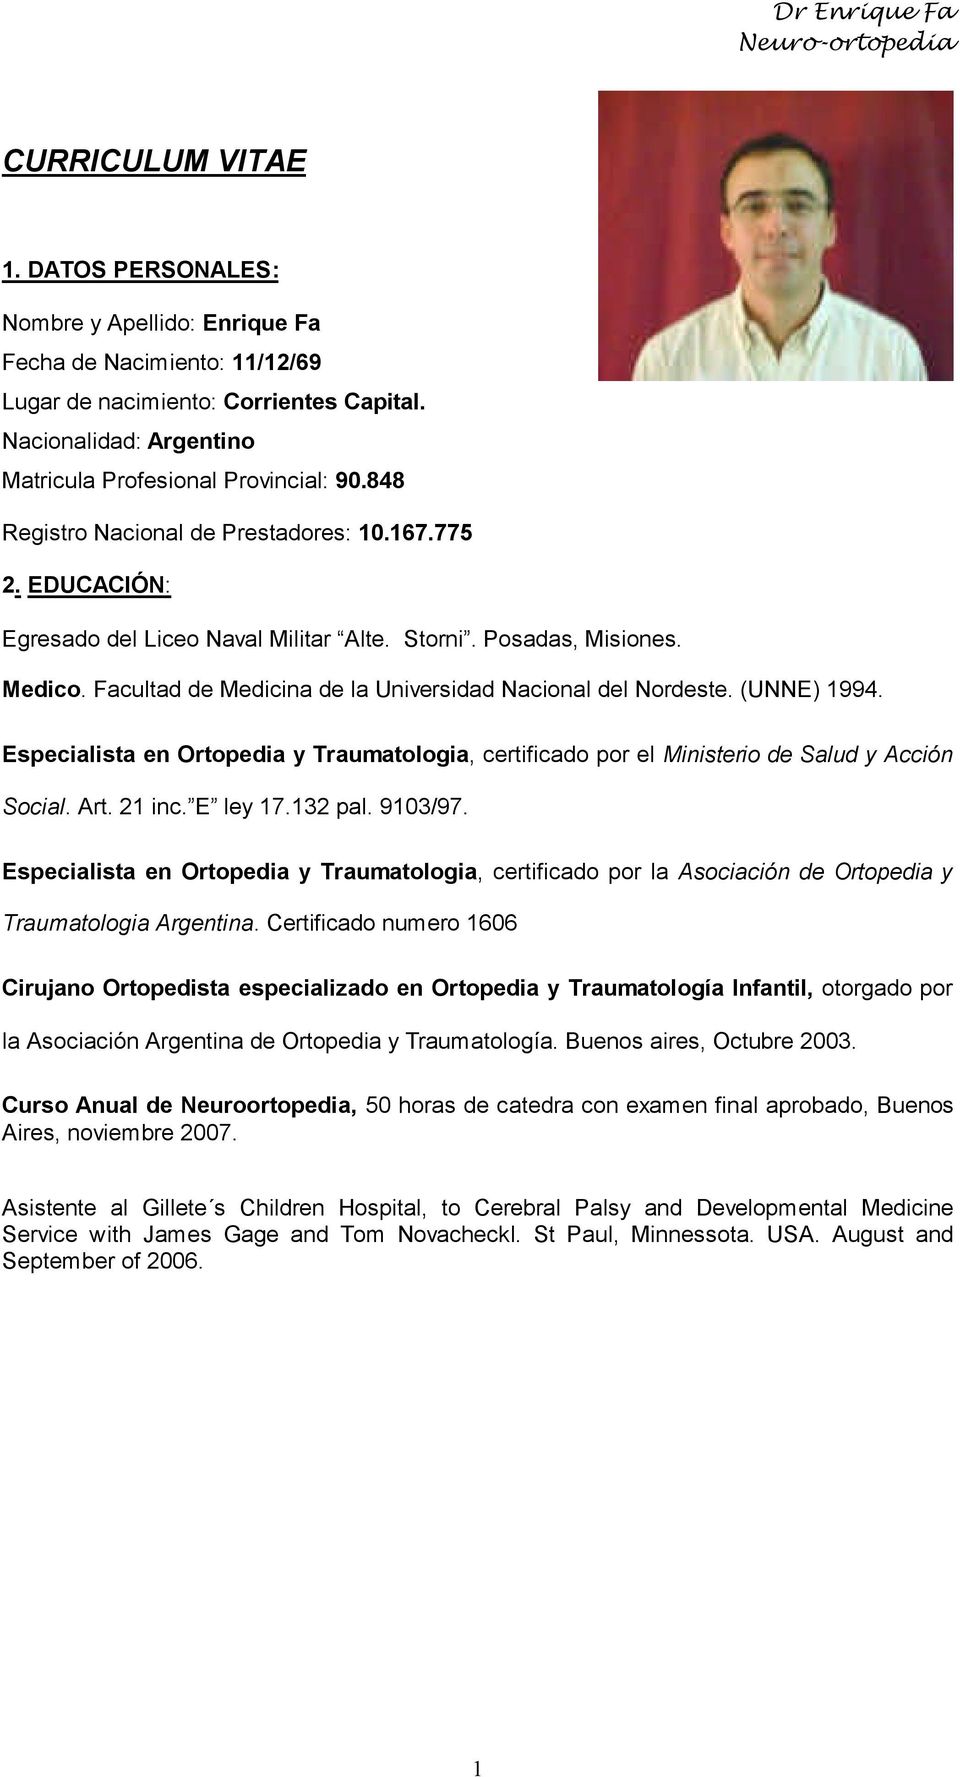 (UNNE) 1994. Especialista en Ortopedia y Traumatologia, certificado por el Ministerio de Salud y Acción Social. Art. 21 inc. E ley 17.132 pal. 9103/97.